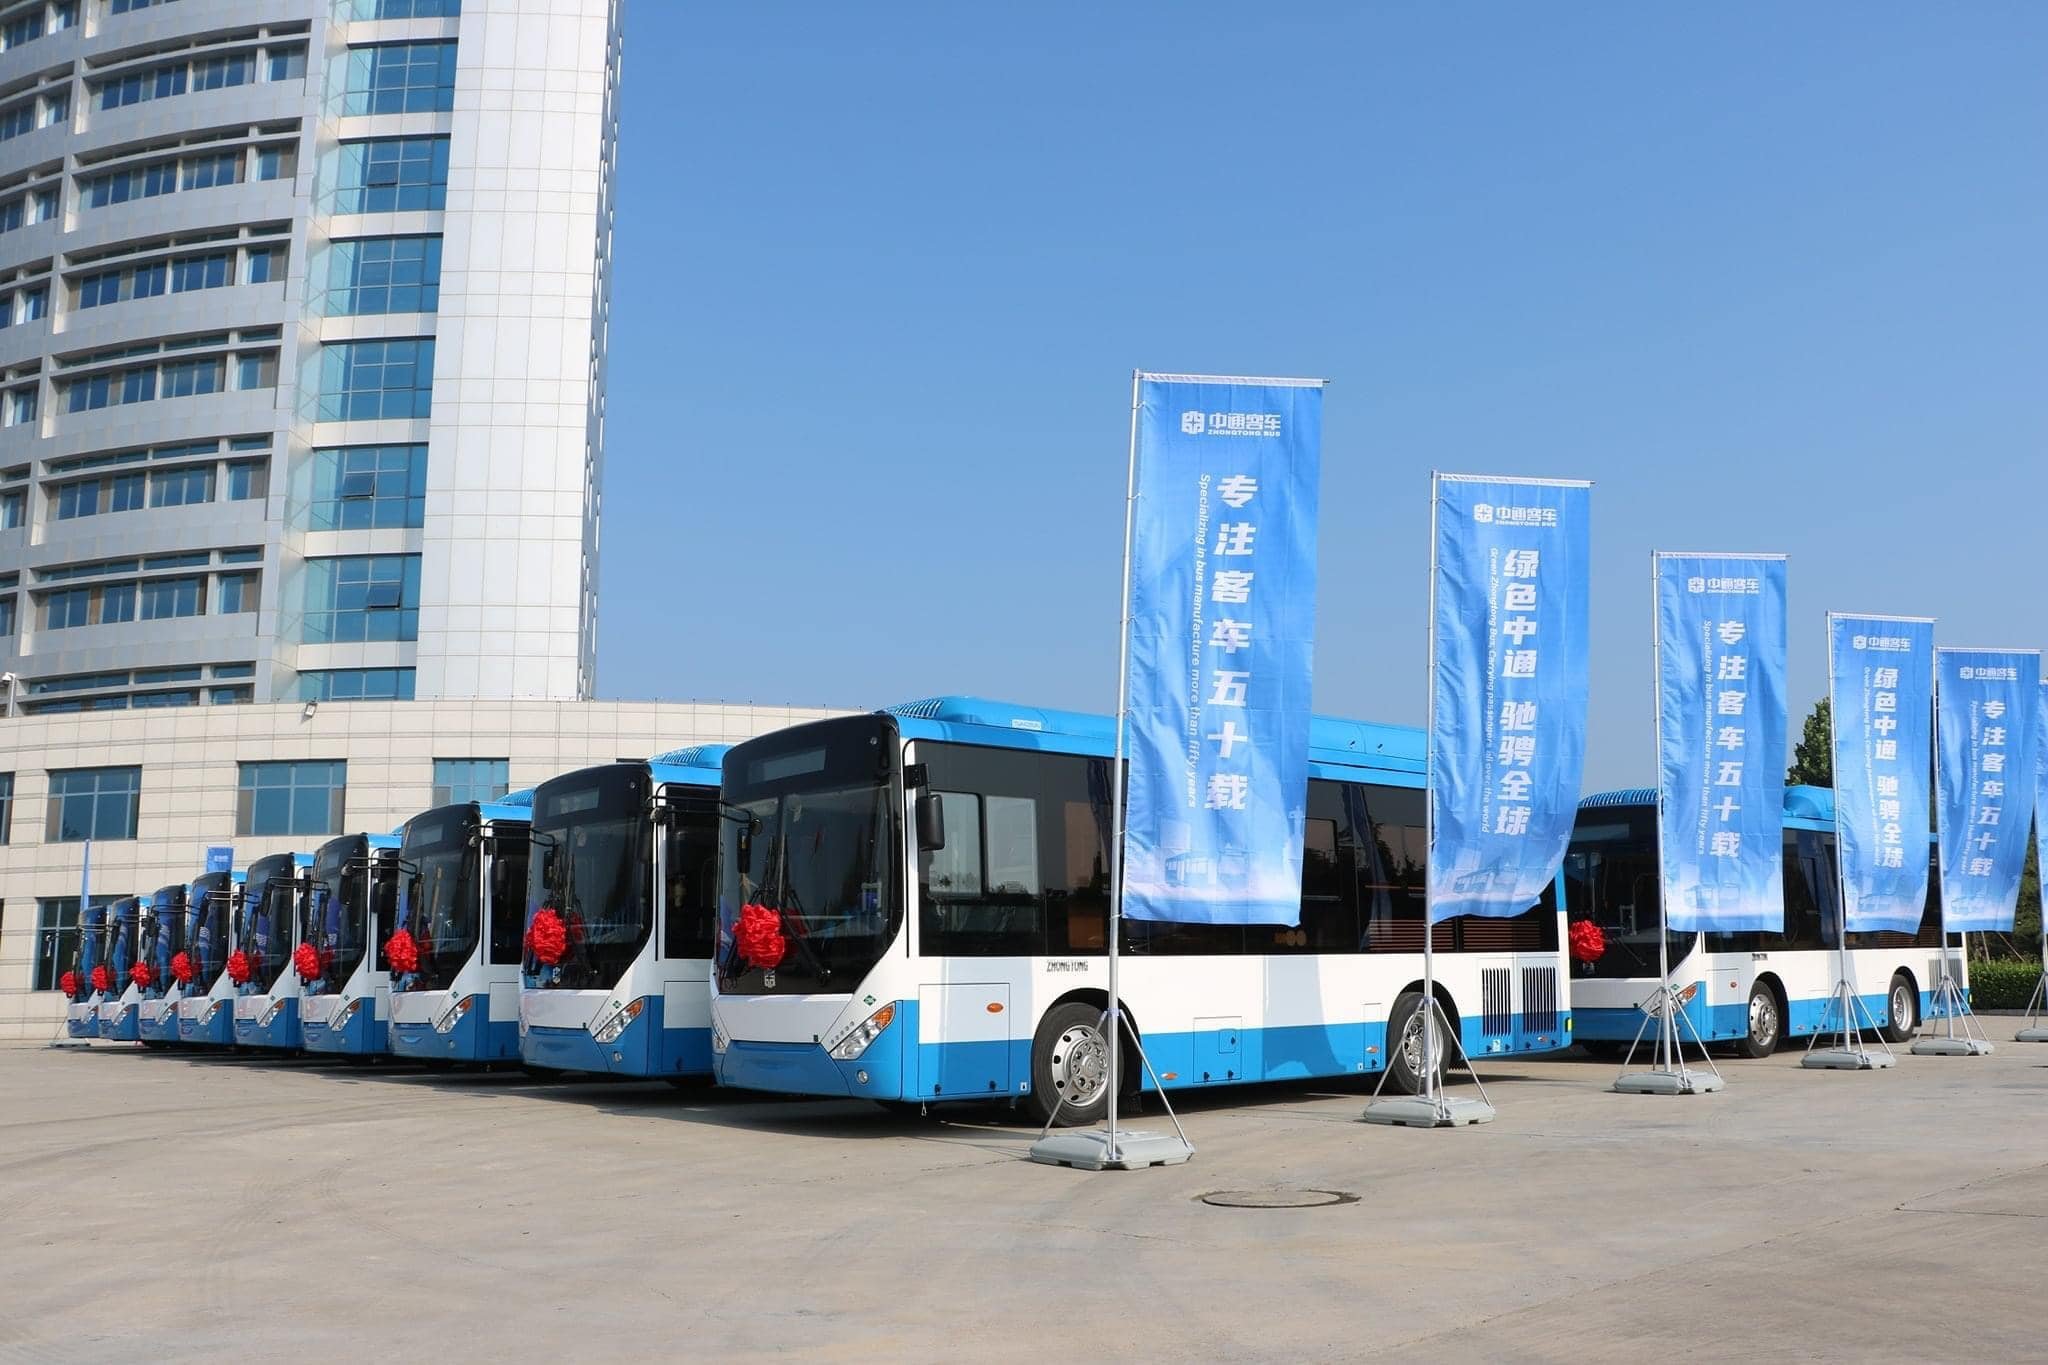 Նոր ավտոբուսները Երևանում կլինեն հաջորդ տարվա հունիս-հուլիս ամիսներին՝ 9 մլրդ դրամի շրջանակներում. Հրաչյա Սարգսյան